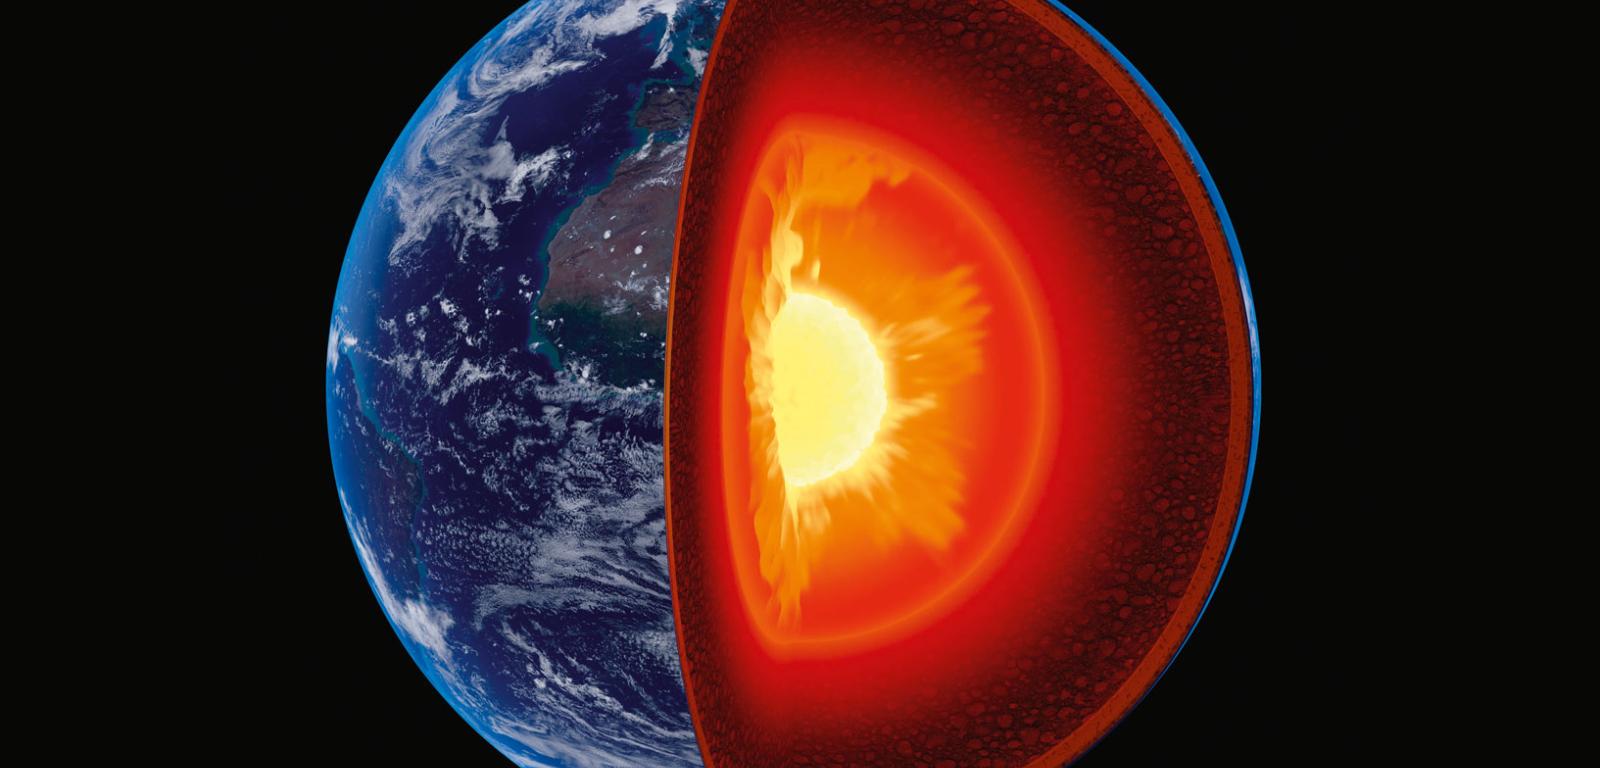 W środku Ziemi znajduje się stałe żelazne jądro rozgrzane do blisko 6000°C.